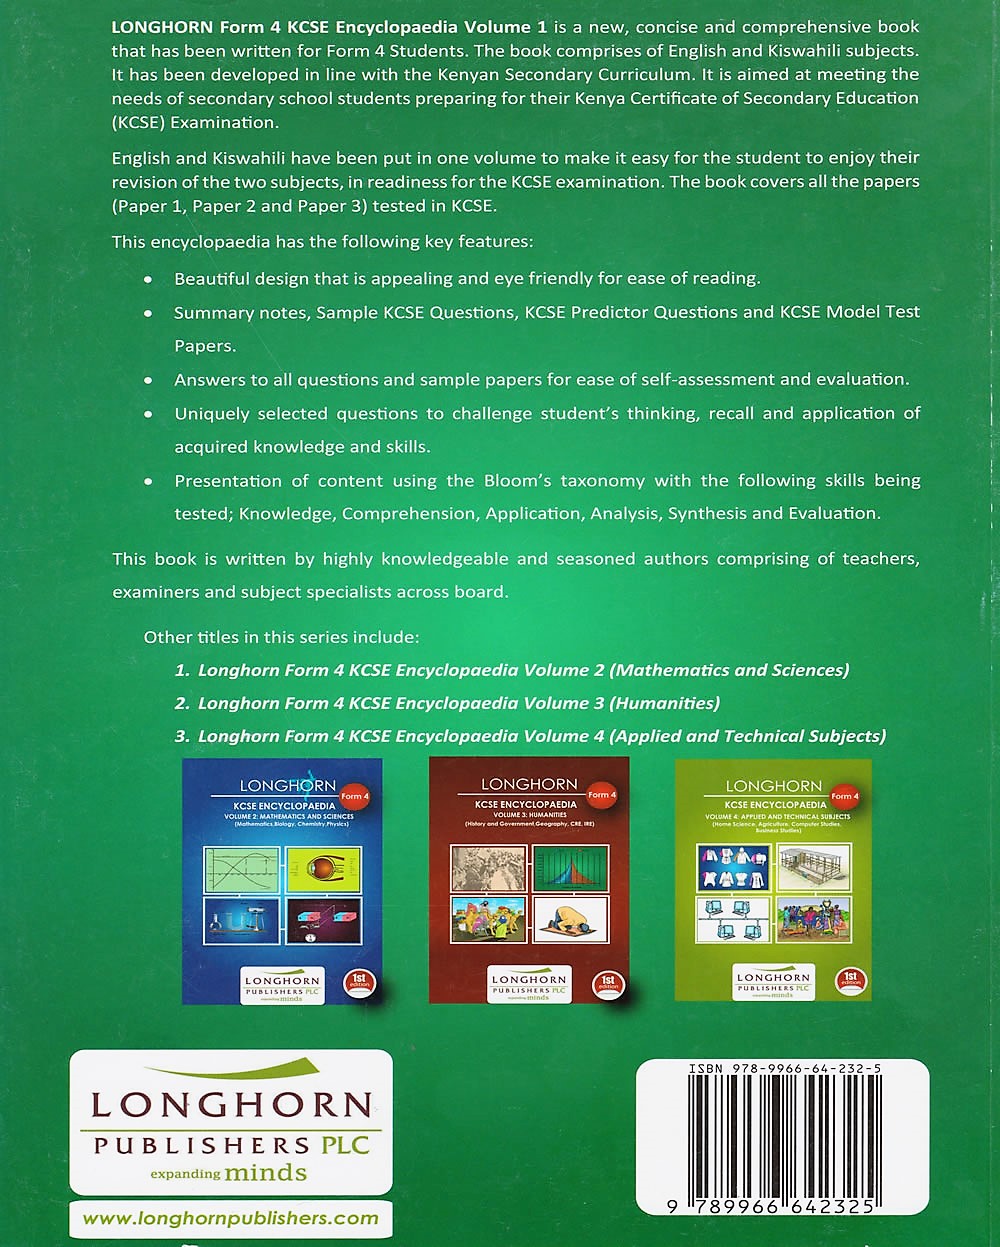 Longhorn Kcse Encyclopaedia F4 Vol 1 Languages Text Book Centre